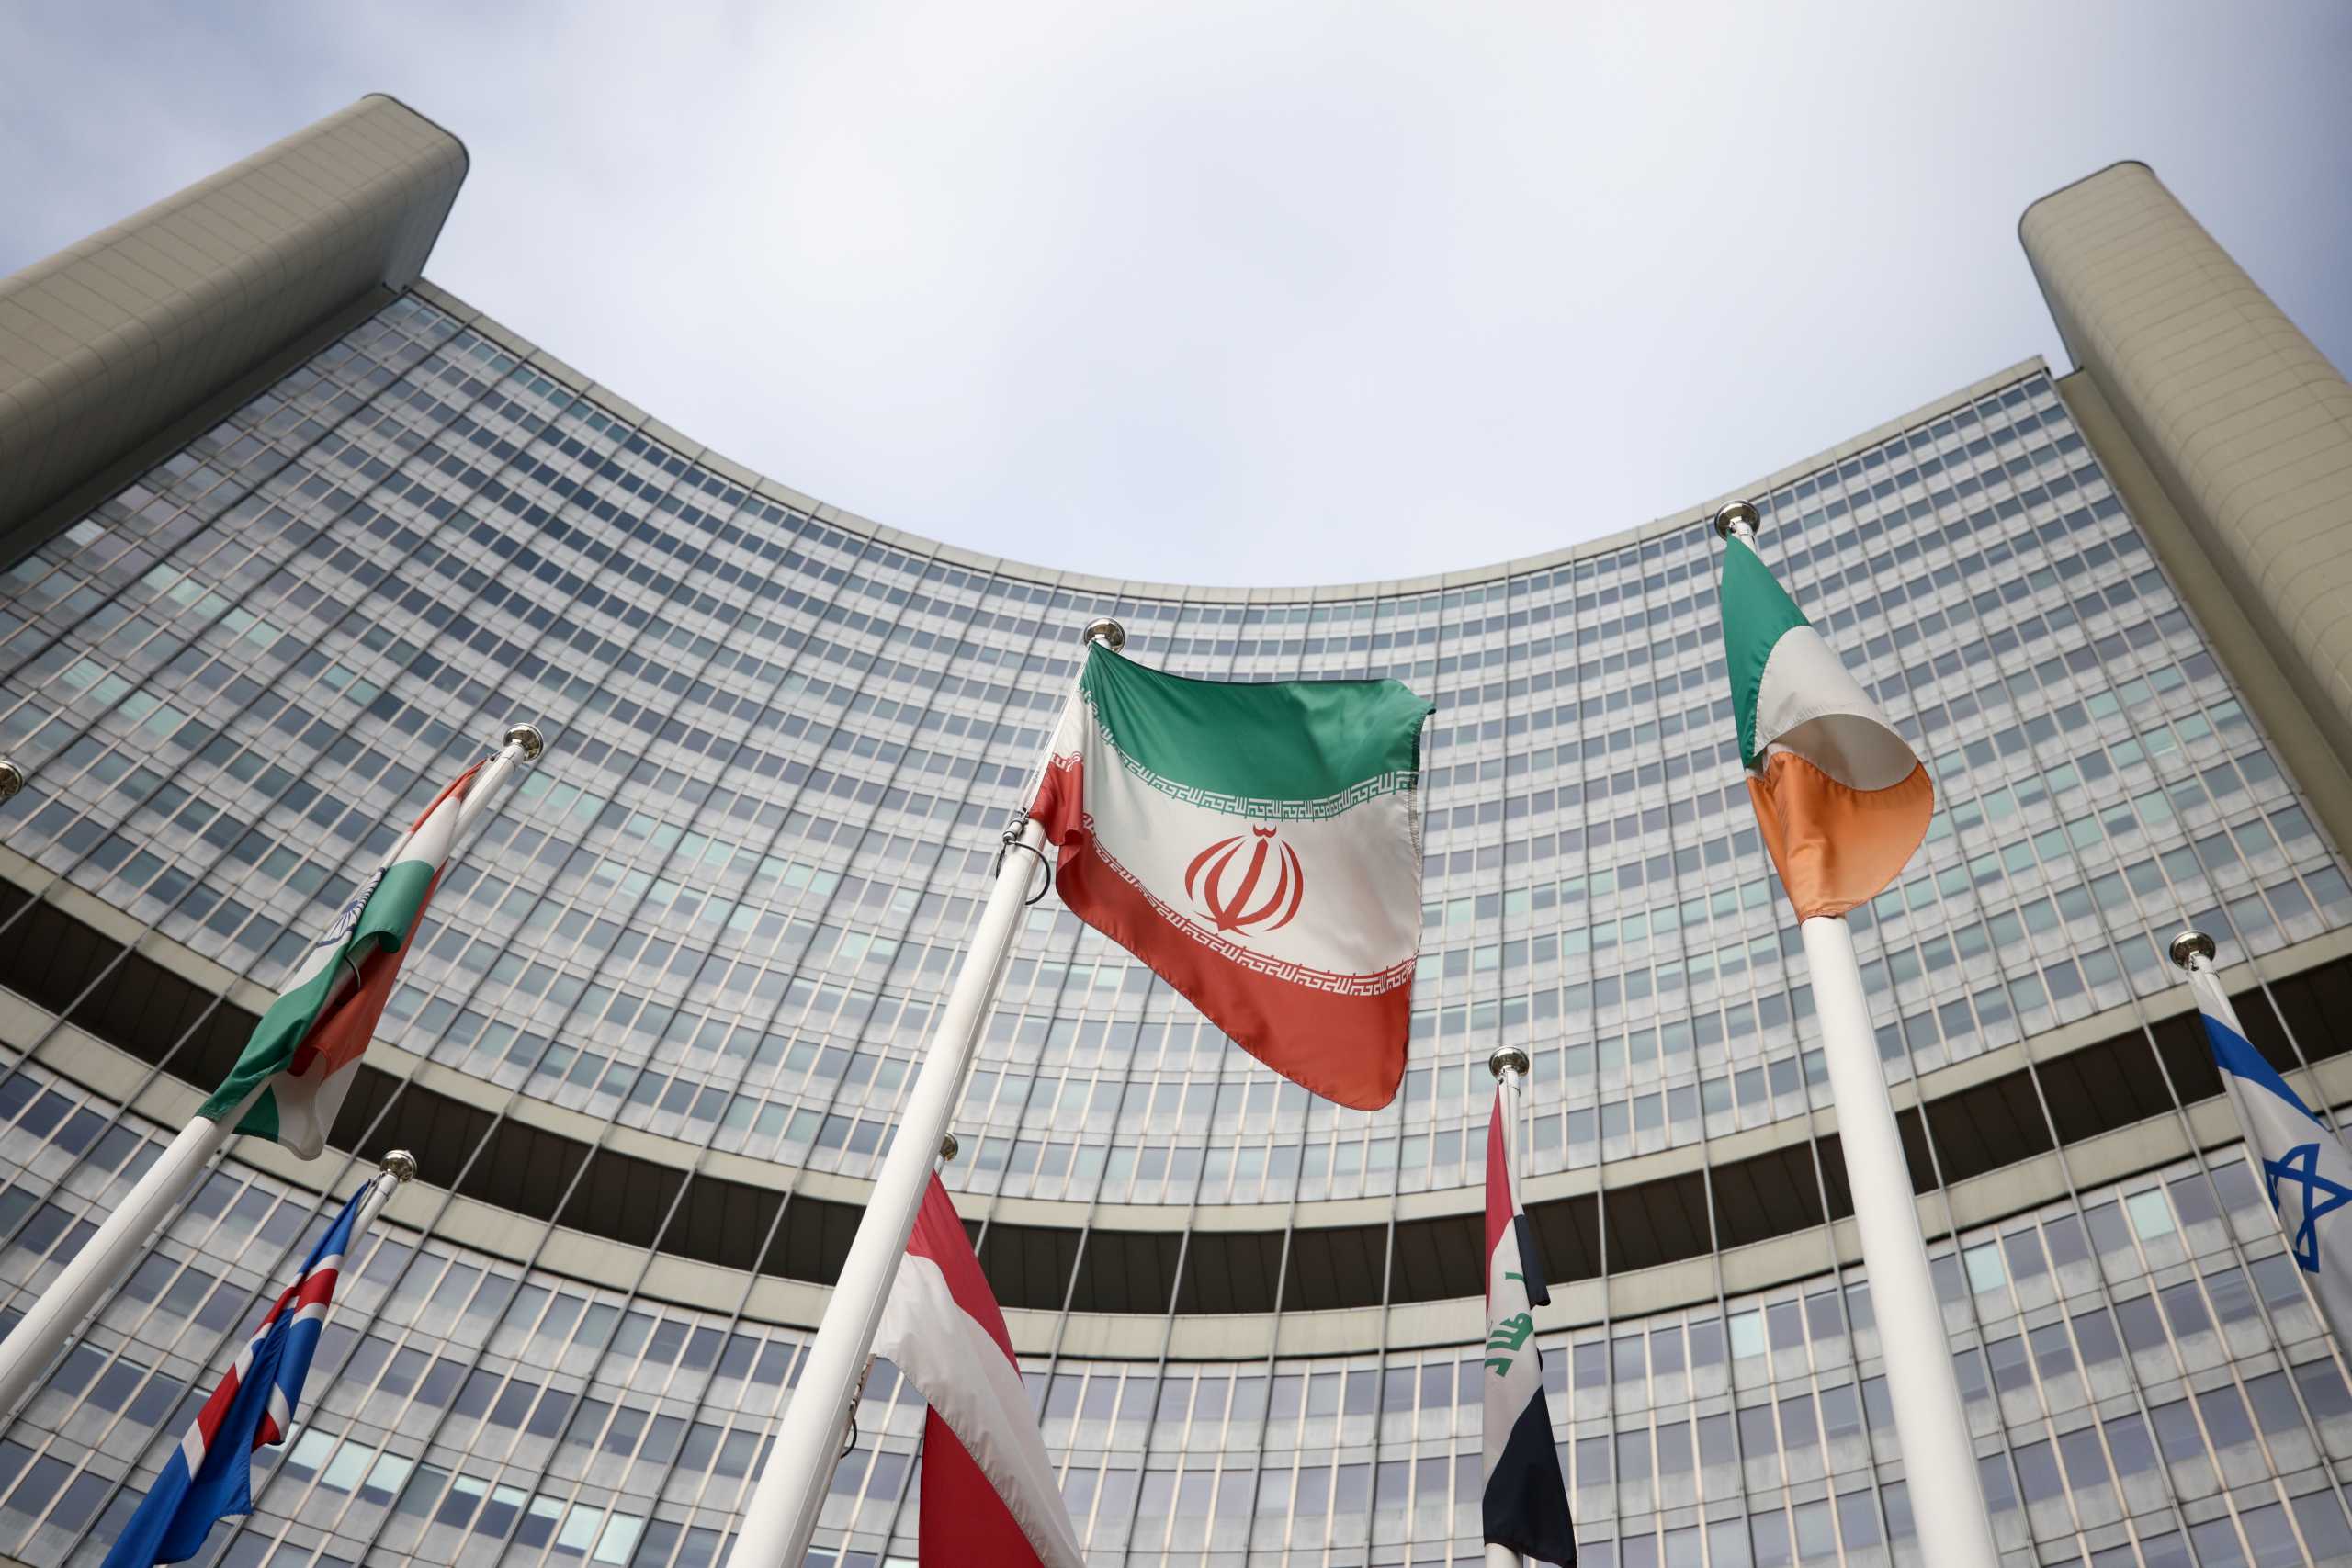 Το Παρίσι ανακοινώνει ψήφισμα κατά του Ιράν στη Διεθνή Υπηρεσία Ατομικής Ενέργειας